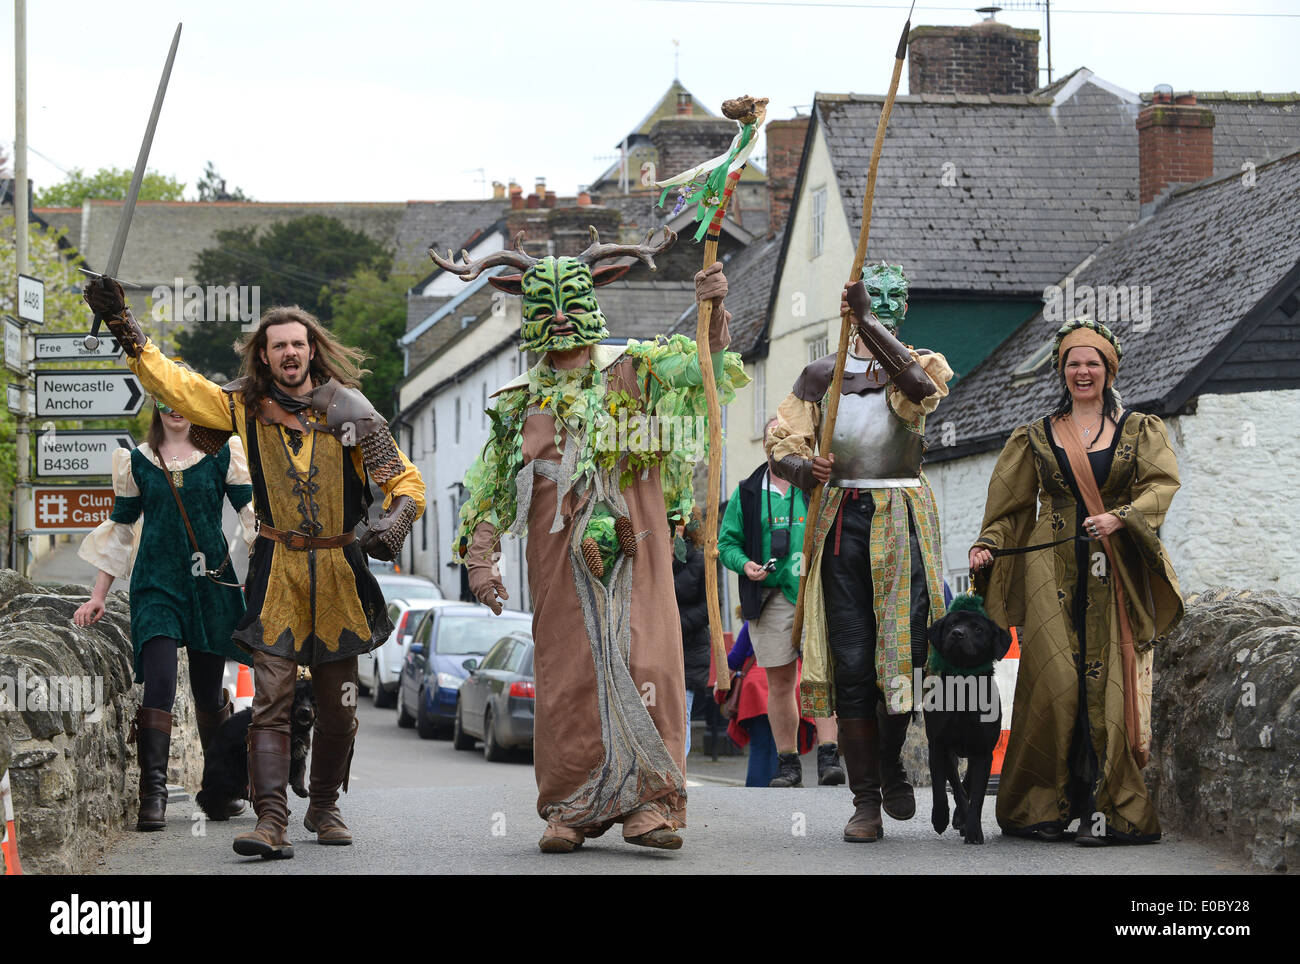 Das Green man Festival kann an einem Tag in Clun in Shropshire gefeiert werden. Bild von Dave Bagnall Photography Stockfoto